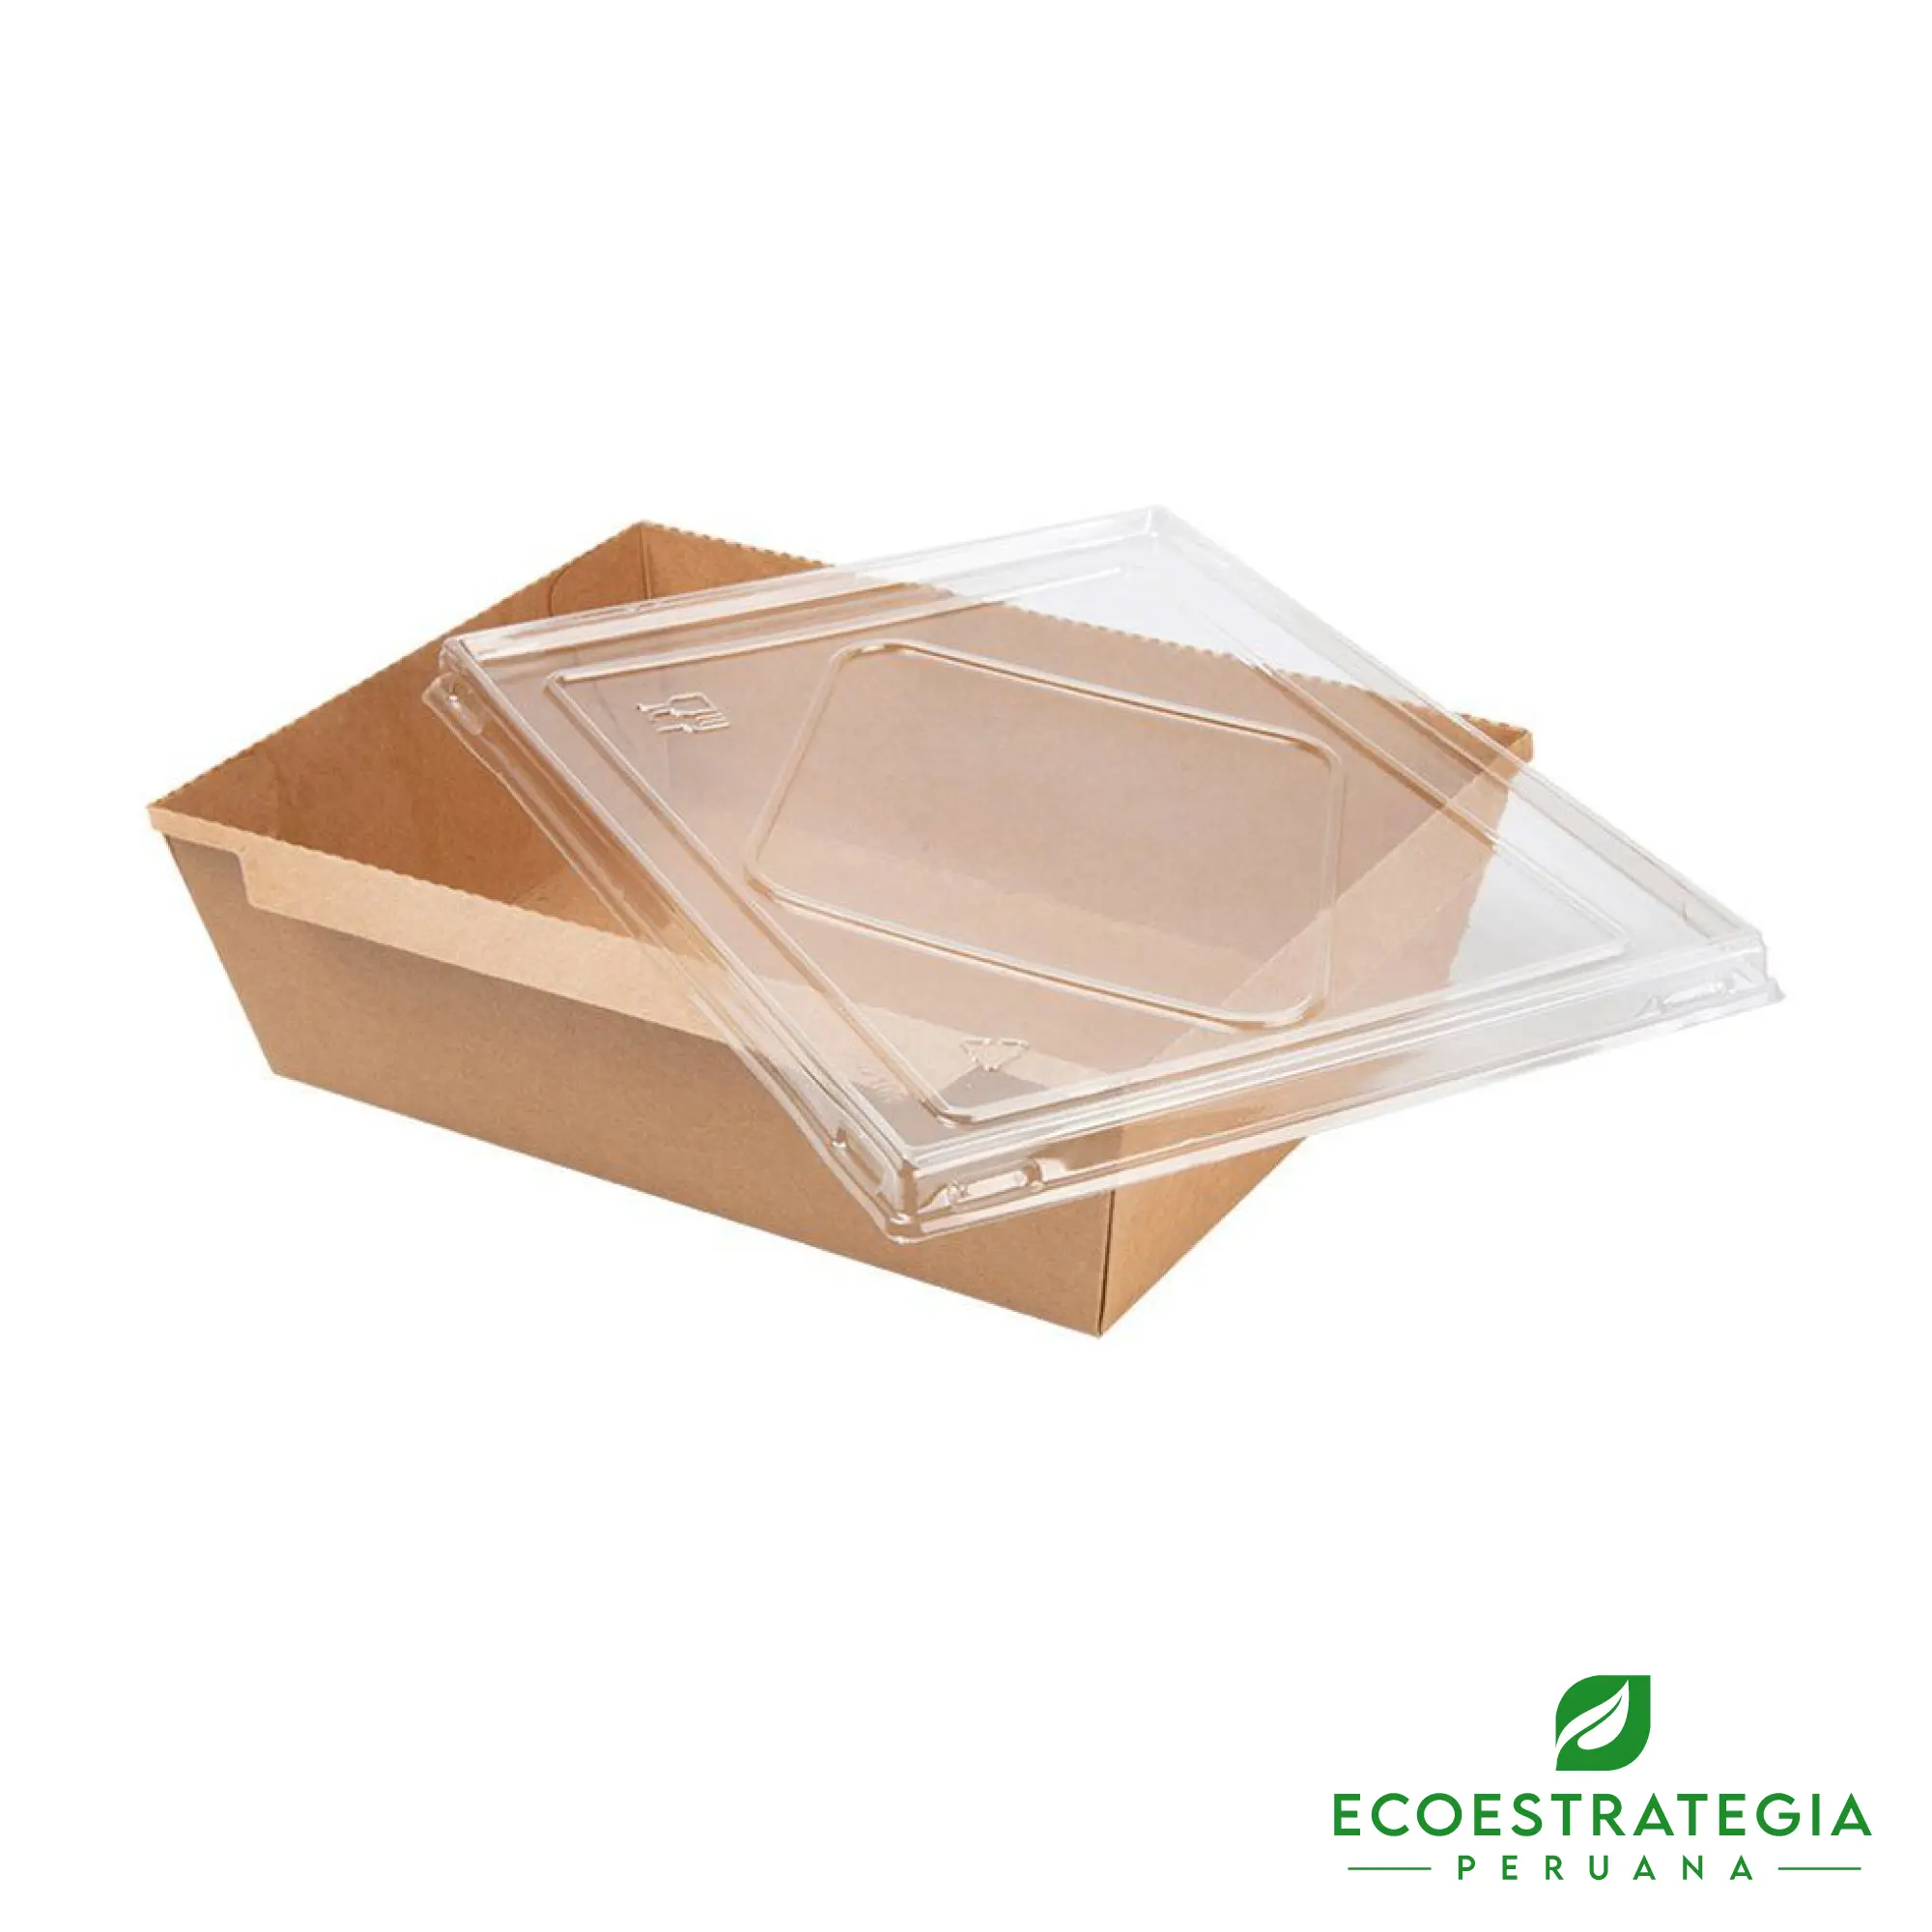 Esta bandeja biodegradable es de 2100ml y es de carton kraft. Envases descartables con gramaje ideal, cotiza tus bandejas, empaques, platos y tapers ecológicos